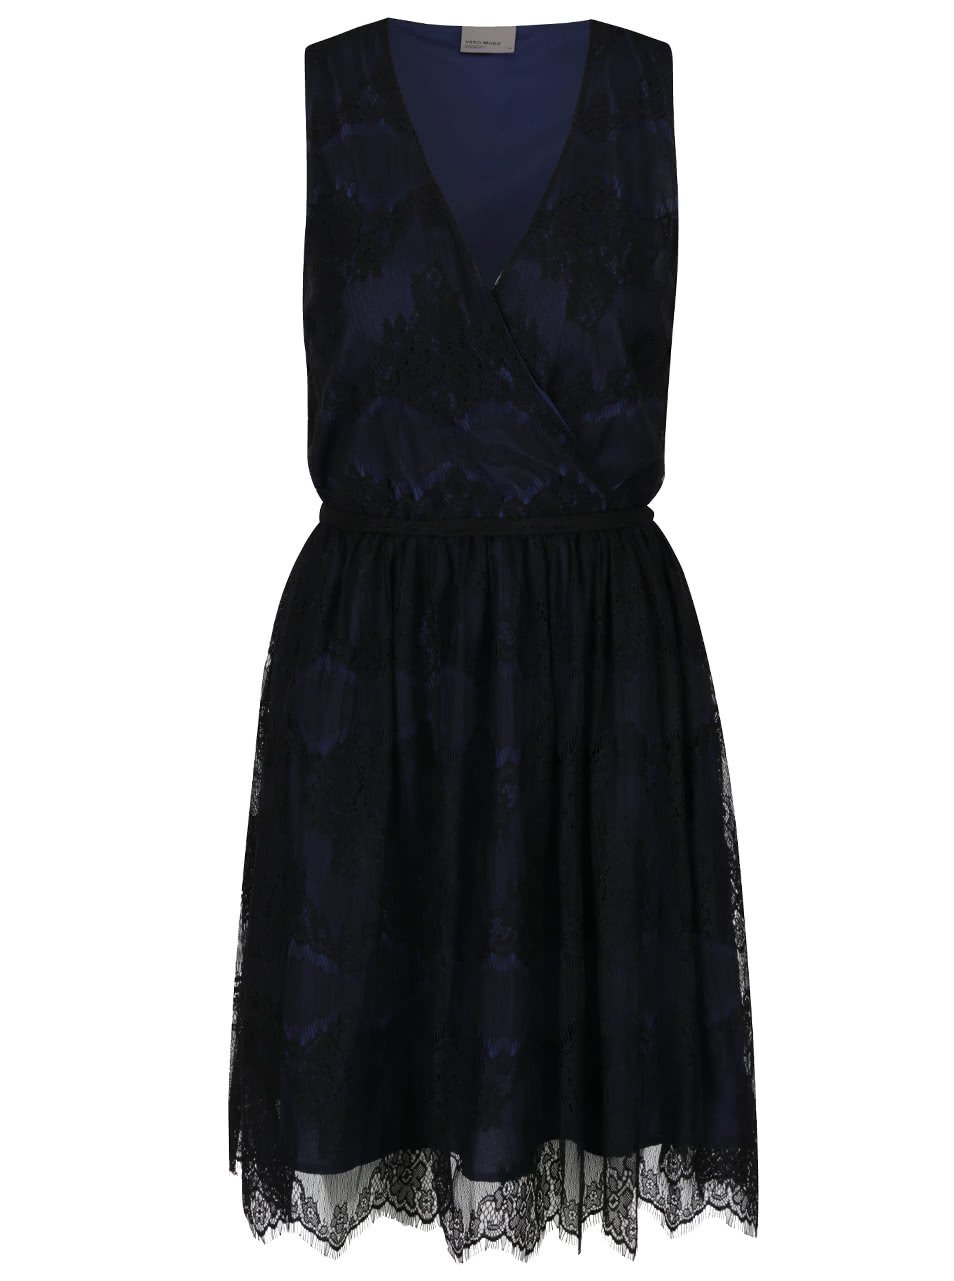 Černo-modré krajkové šaty Vero Moda Sally